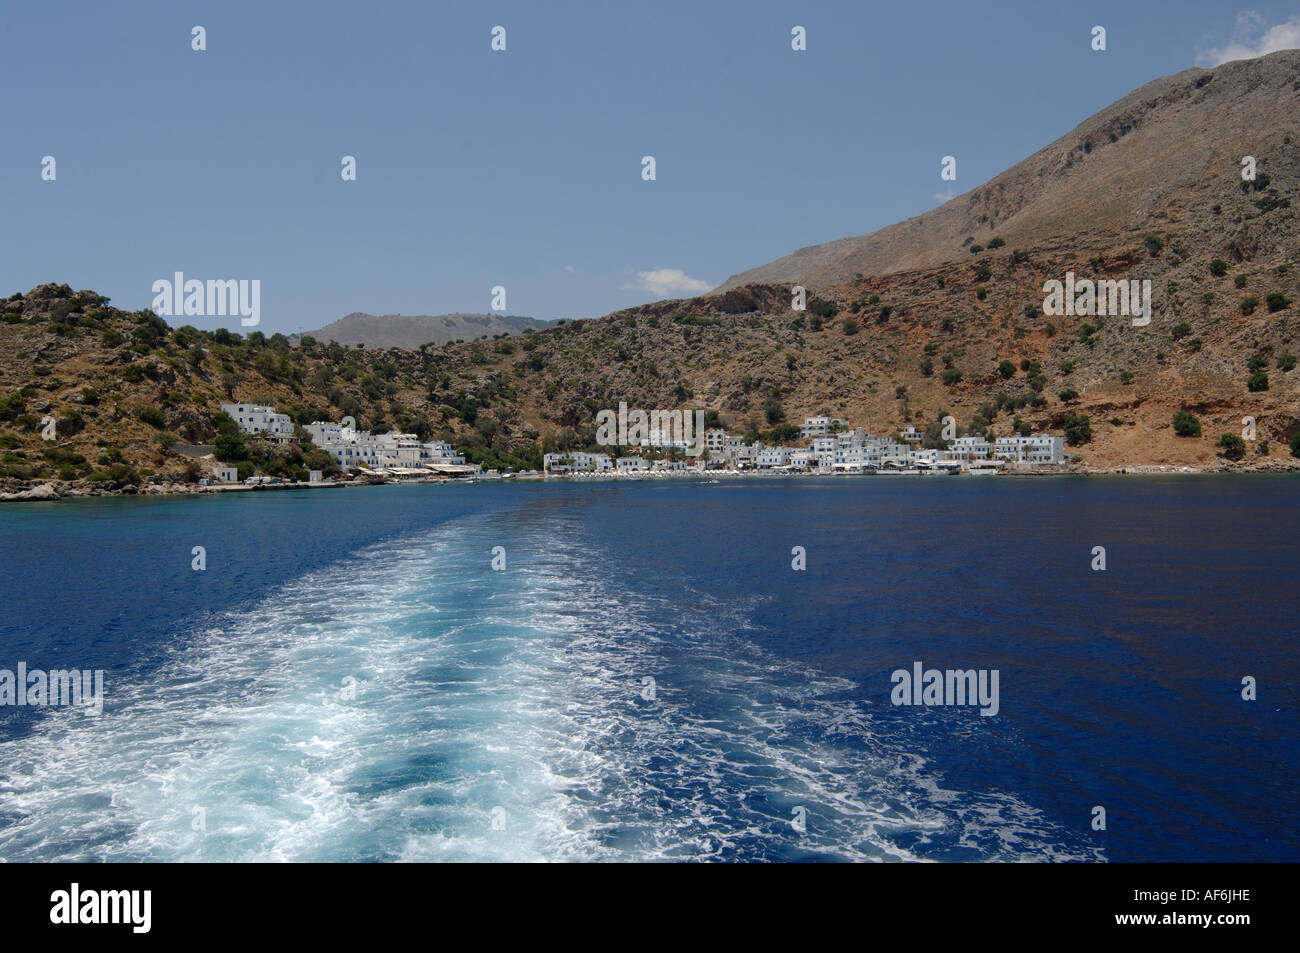 Loutro città dal traghetto guardando indietro sulla scia di barche a sud ovest di Creta Foto Stock